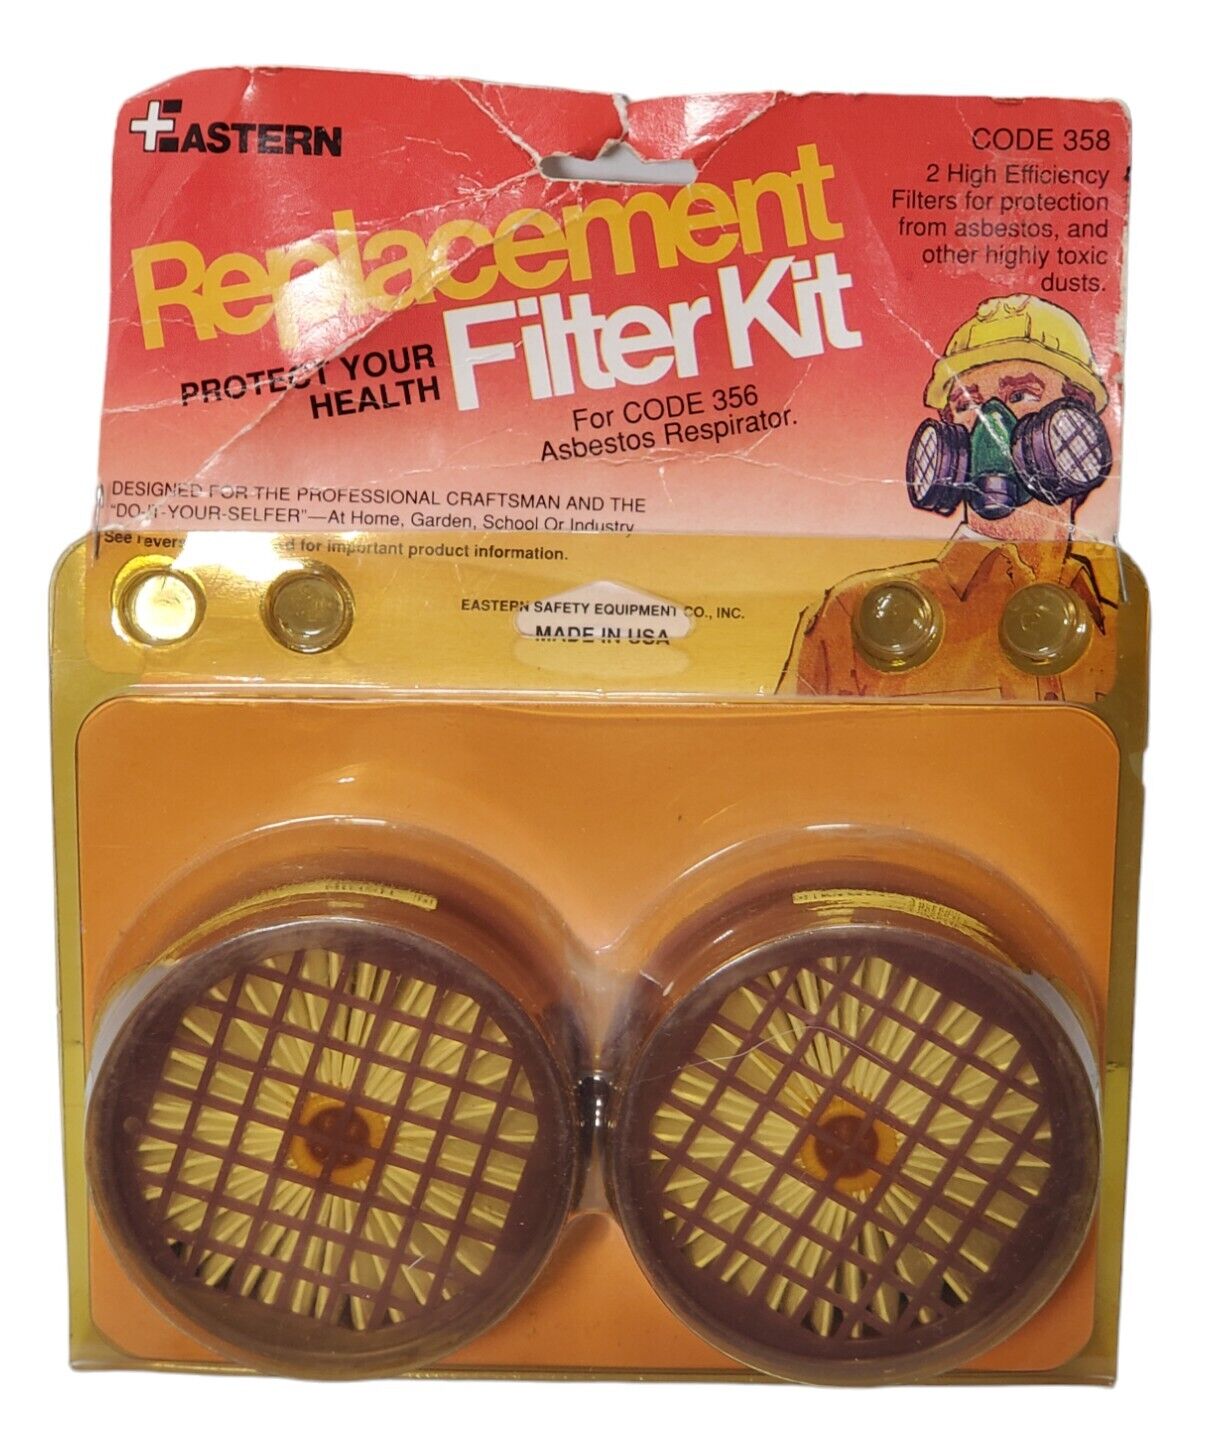 VTG Eastern Safety Equipment Co Filter Kit Set For Code 356 Asbestos Respirator